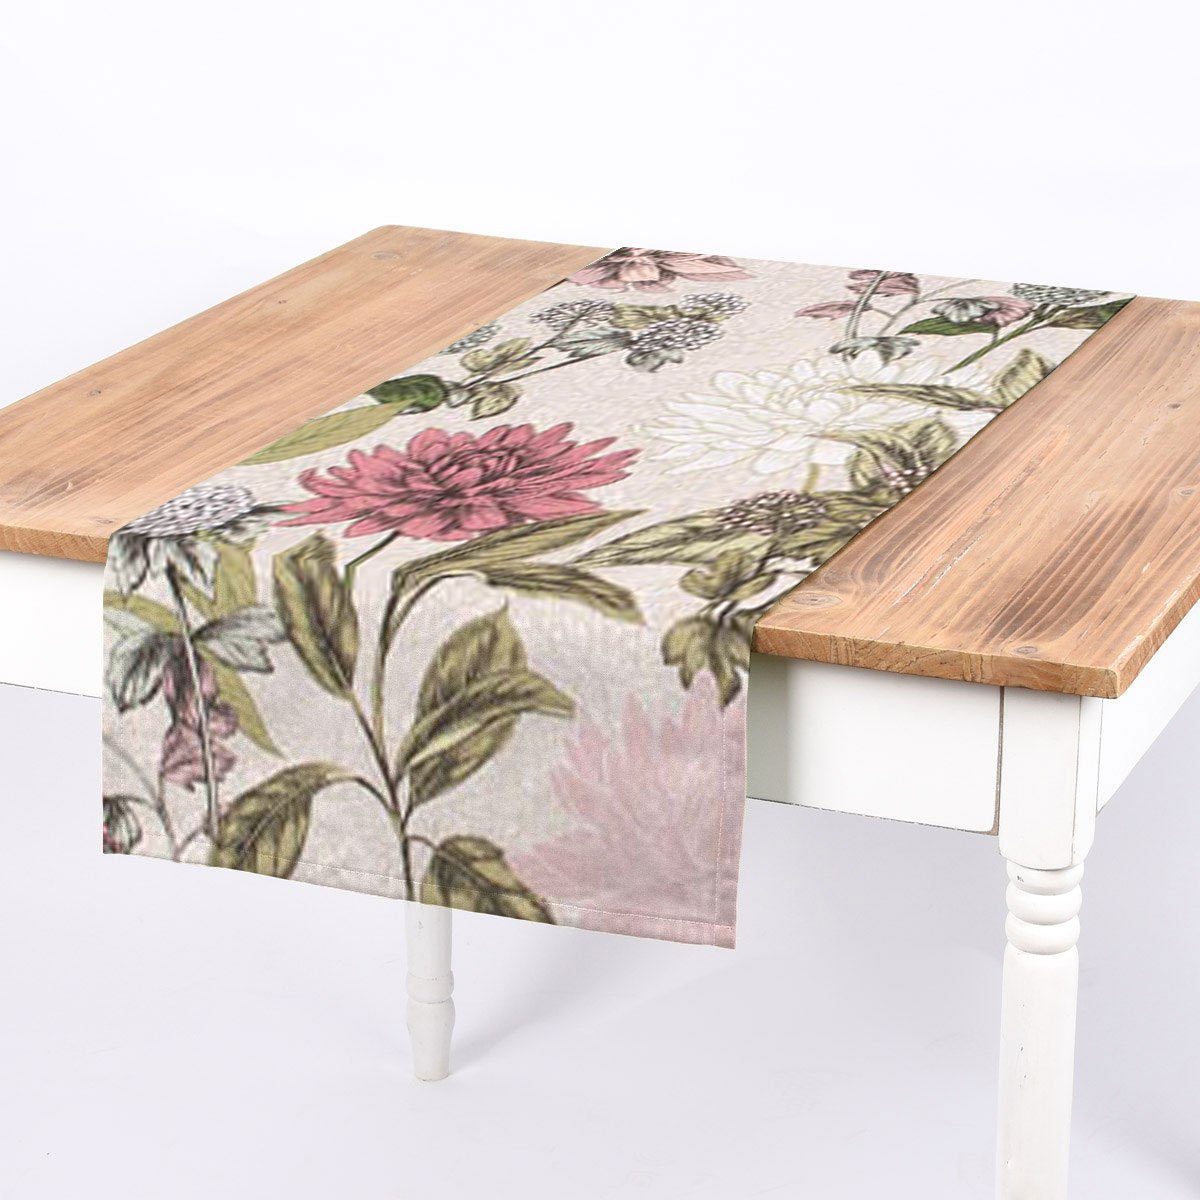 SCHÖNER LEBEN. Tischläufer SCHÖNER Tischläufer LEBEN. handmade Clothilde Blumentraum beige Pastell lila